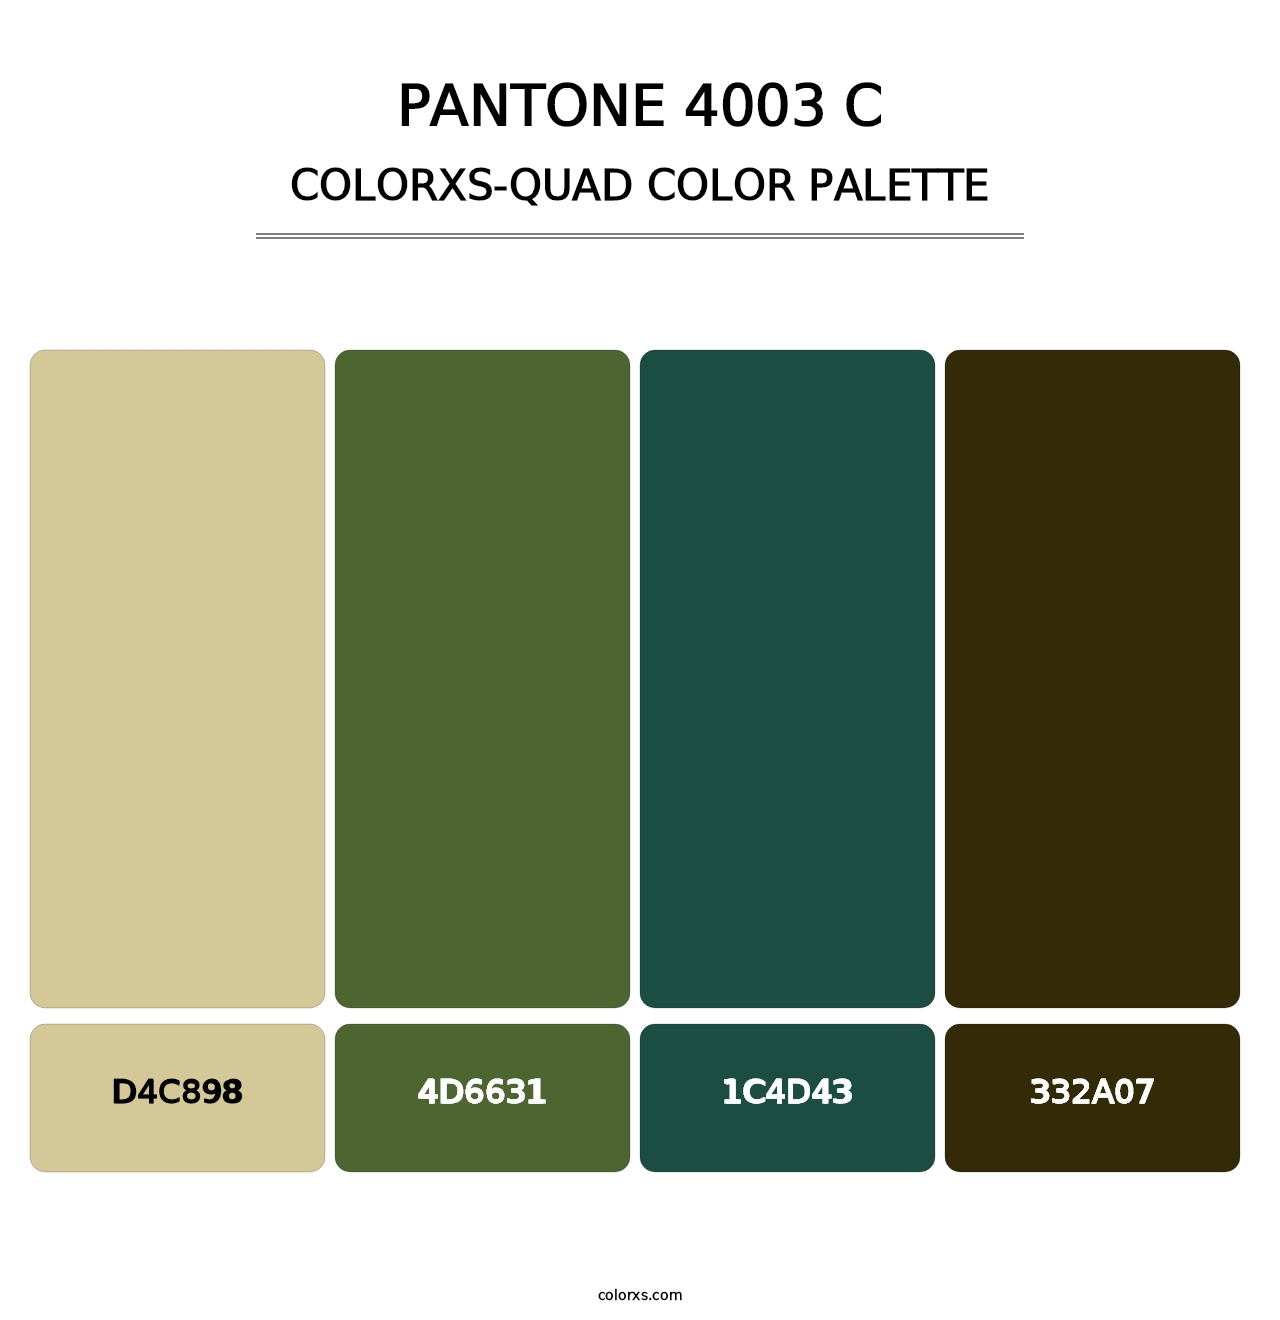 PANTONE 4003 C - Colorxs Quad Palette